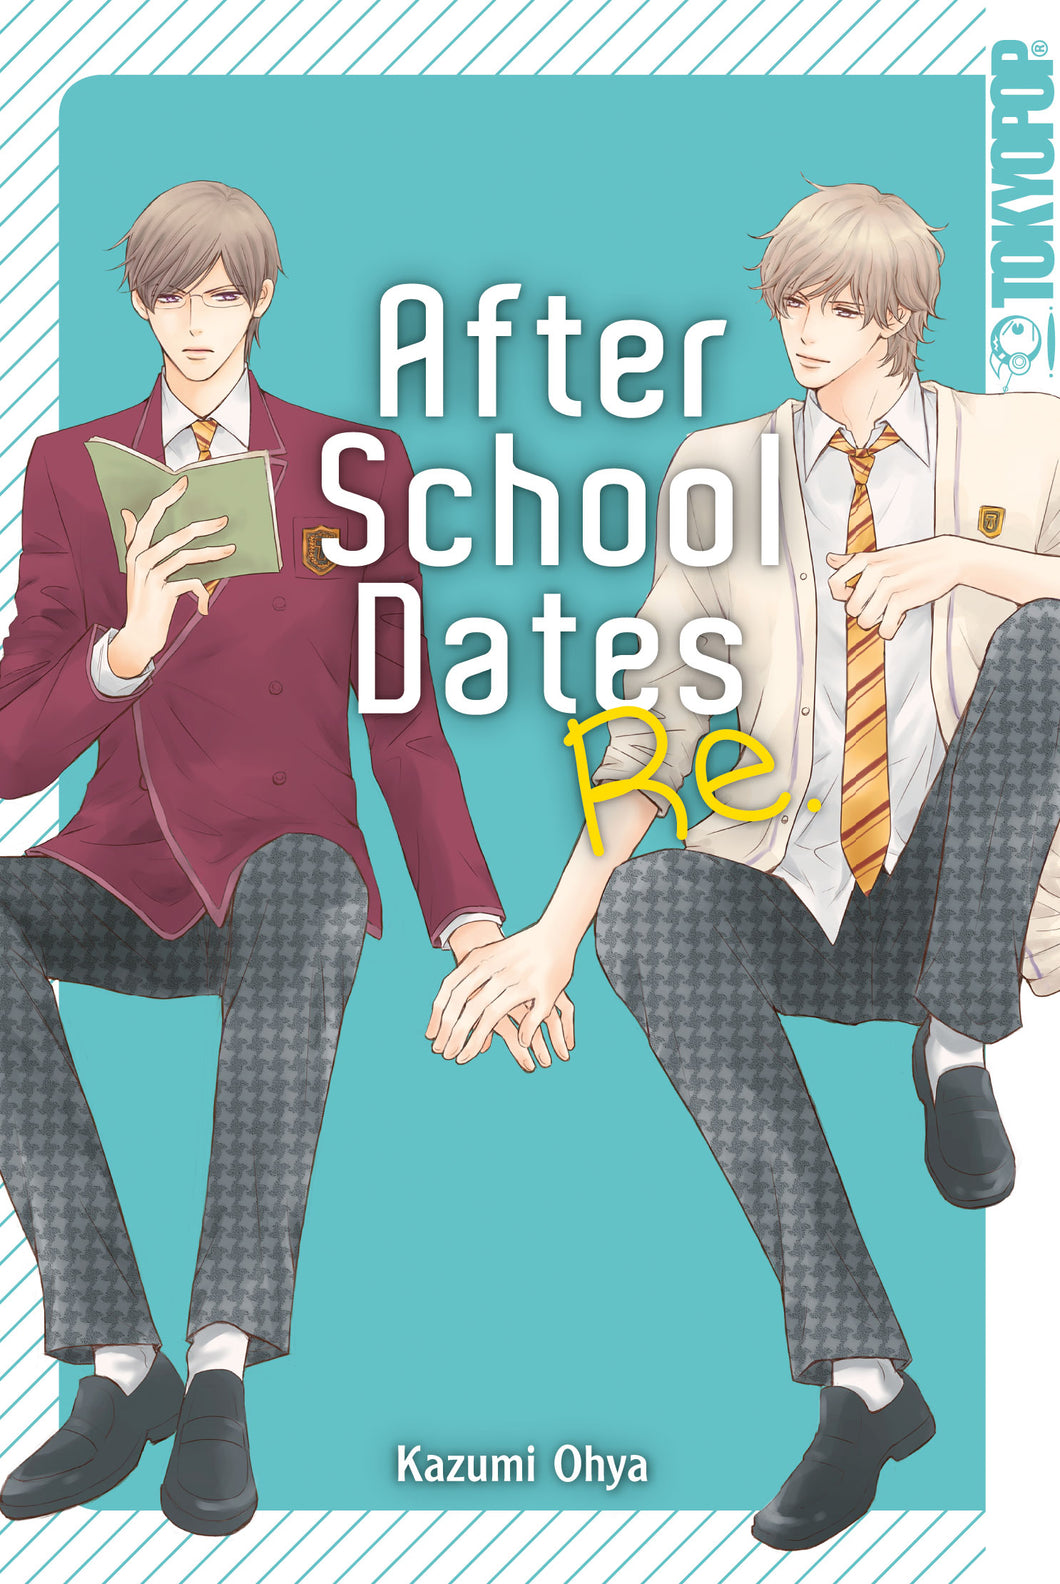 After School Dates Re. - Rune Online